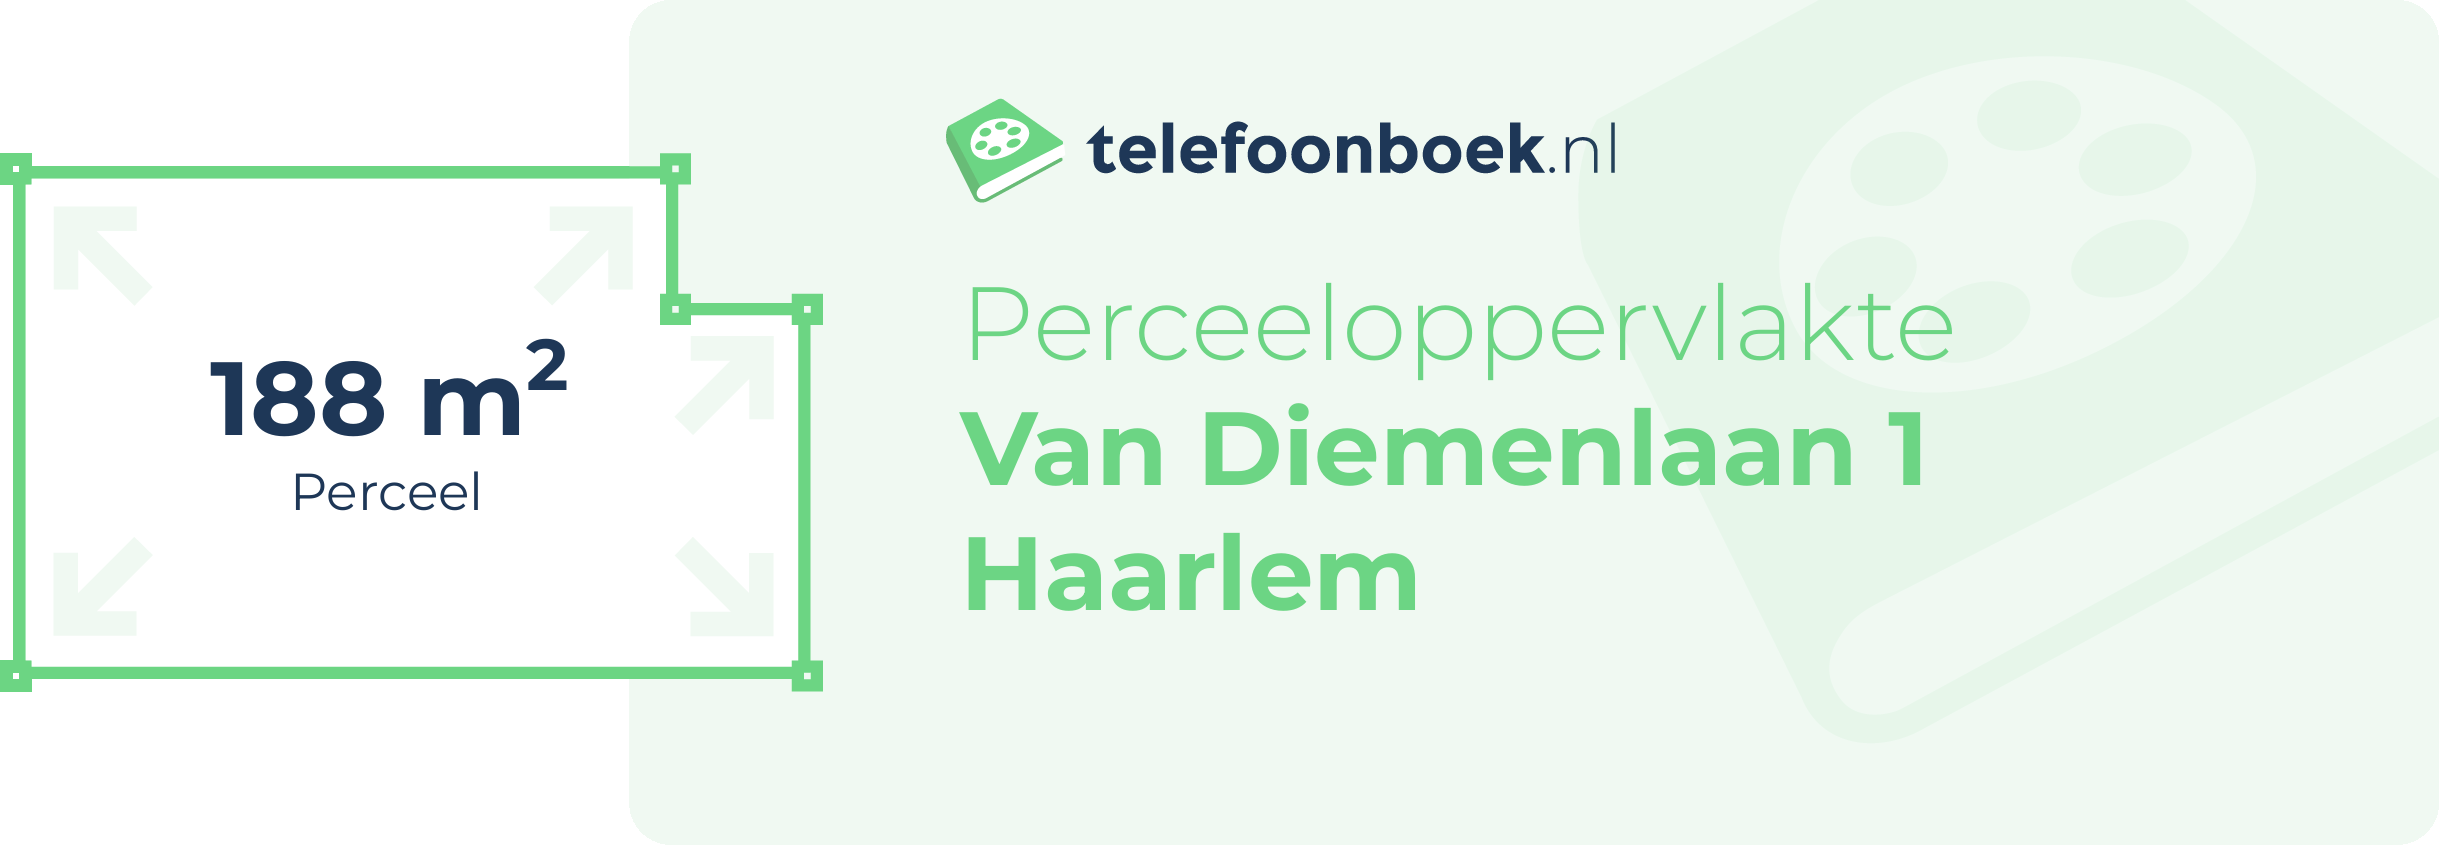 Perceeloppervlakte Van Diemenlaan 1 Haarlem